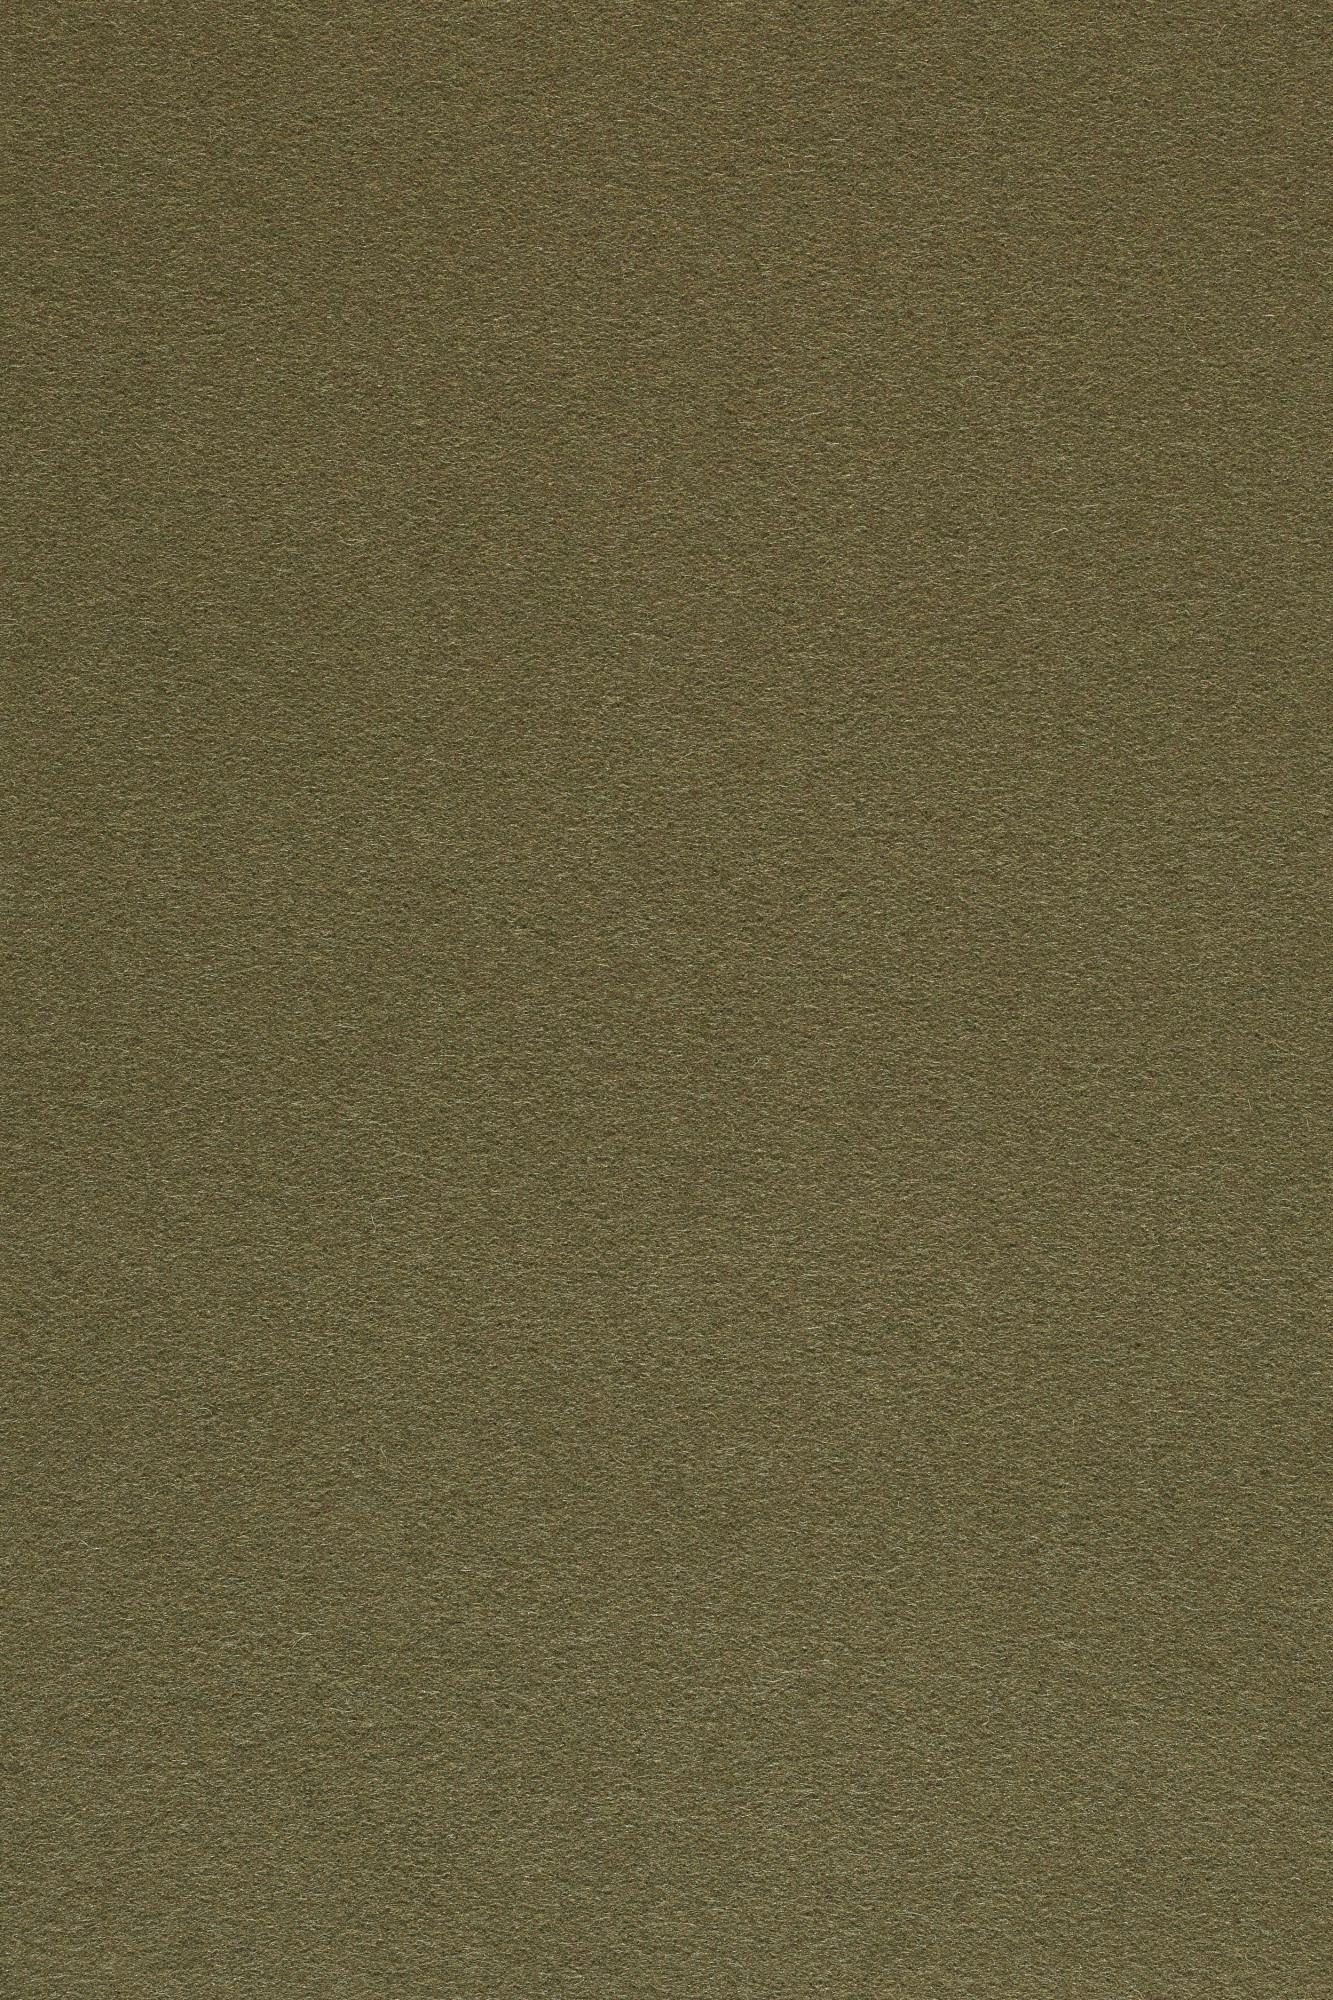 Fabric sample Divina 3 356 brown